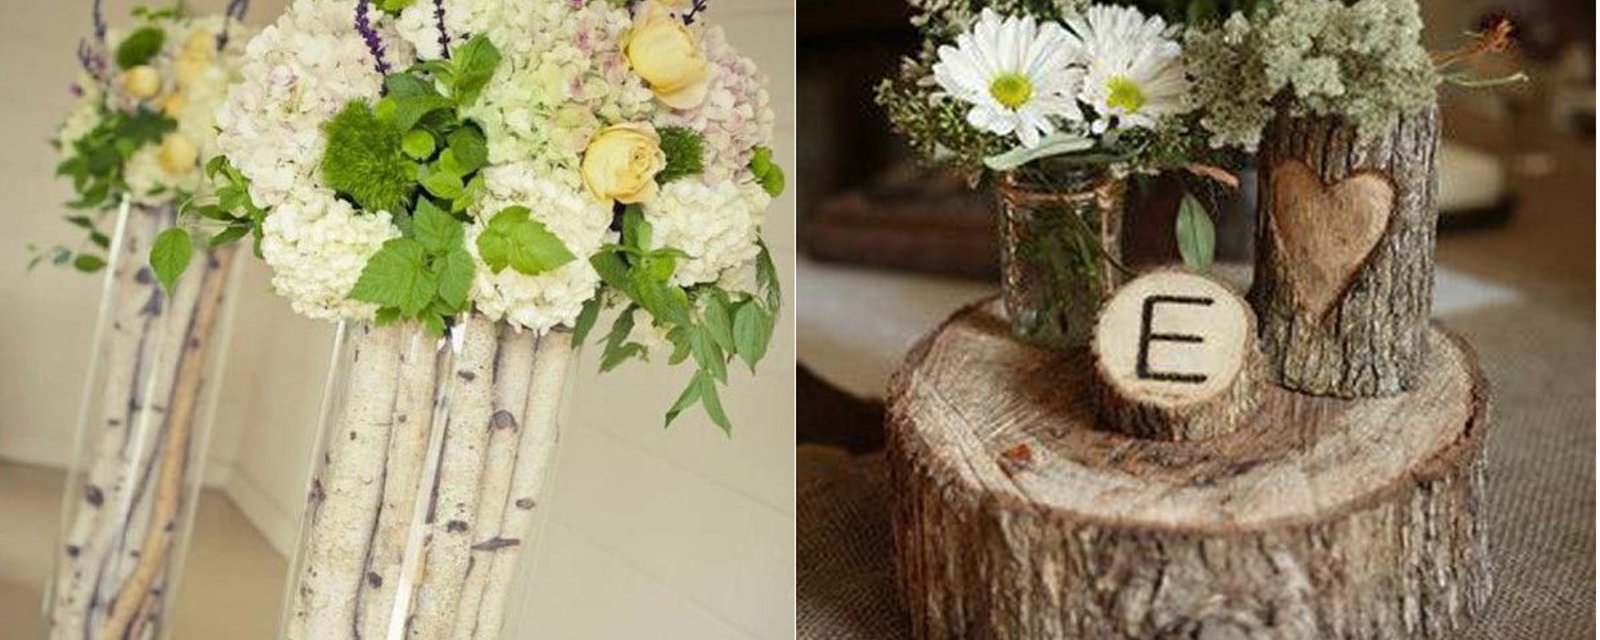 12 idées pour fabriquer des vases avec des bûches ou des troncs d'arbres